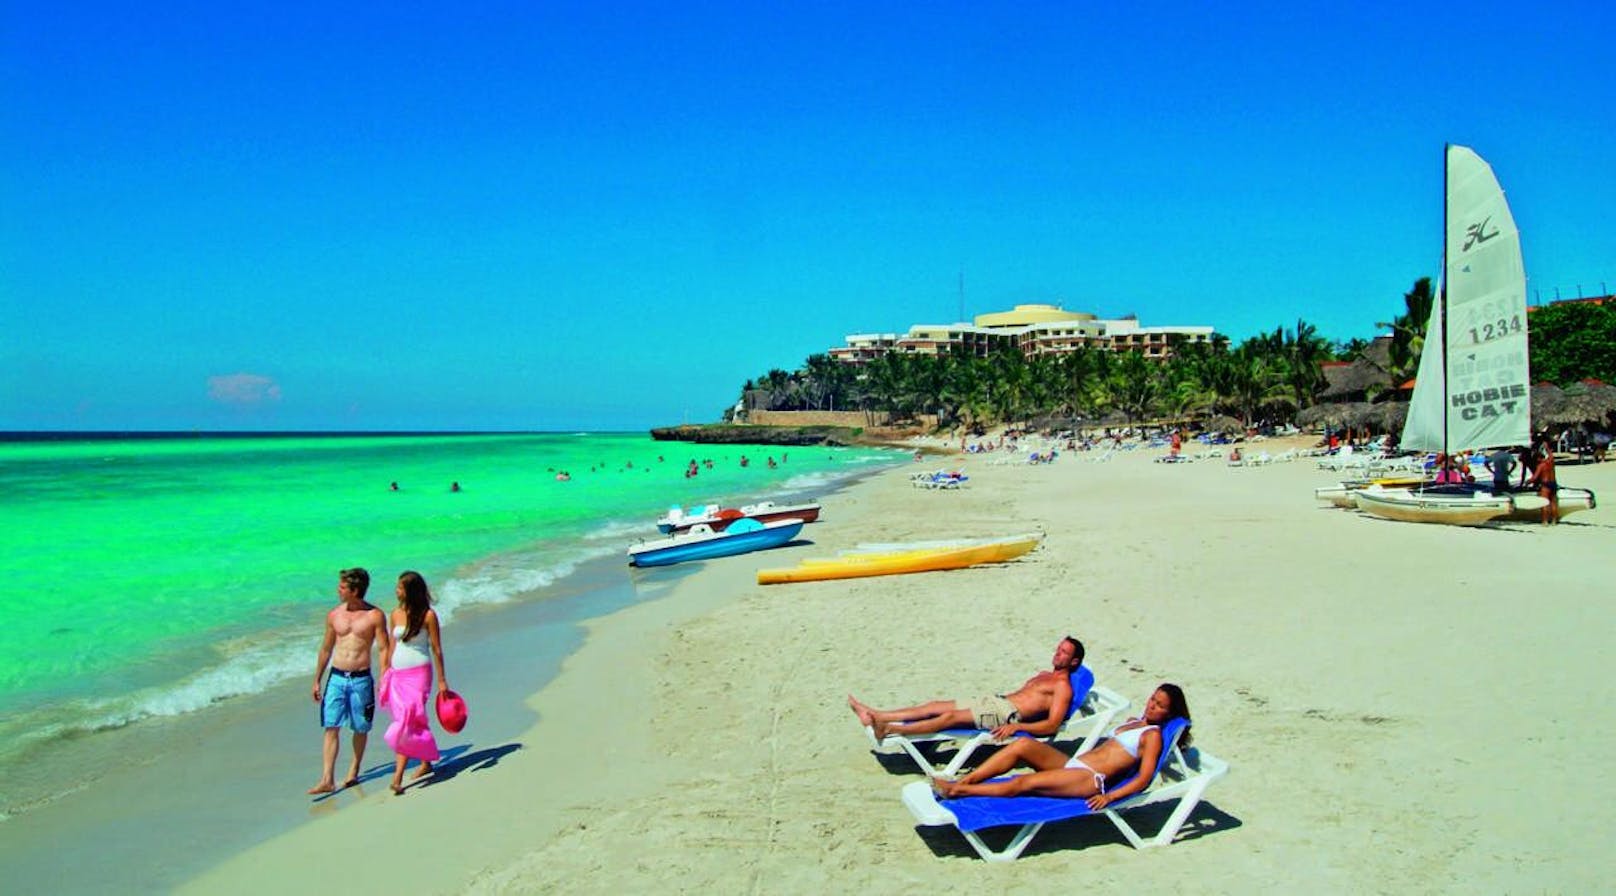 Kuba: Das Hotel Melia Varadero ist ideal für Familien, junge und jung gebliebene Gäste. <a href="http://buchen.allesreise.at/?pagetype=reise&select=PO_2|ON_Y|BE_2,0,2|RA_13|RE_3522|KA_30%3E|AU_7:14|PR_150:5000|DE_2017-11-1%3E|RT_2018-3-31%3C|AB_VIE|VA_15&portal=2">Hier geht's zum Angebot!</a>